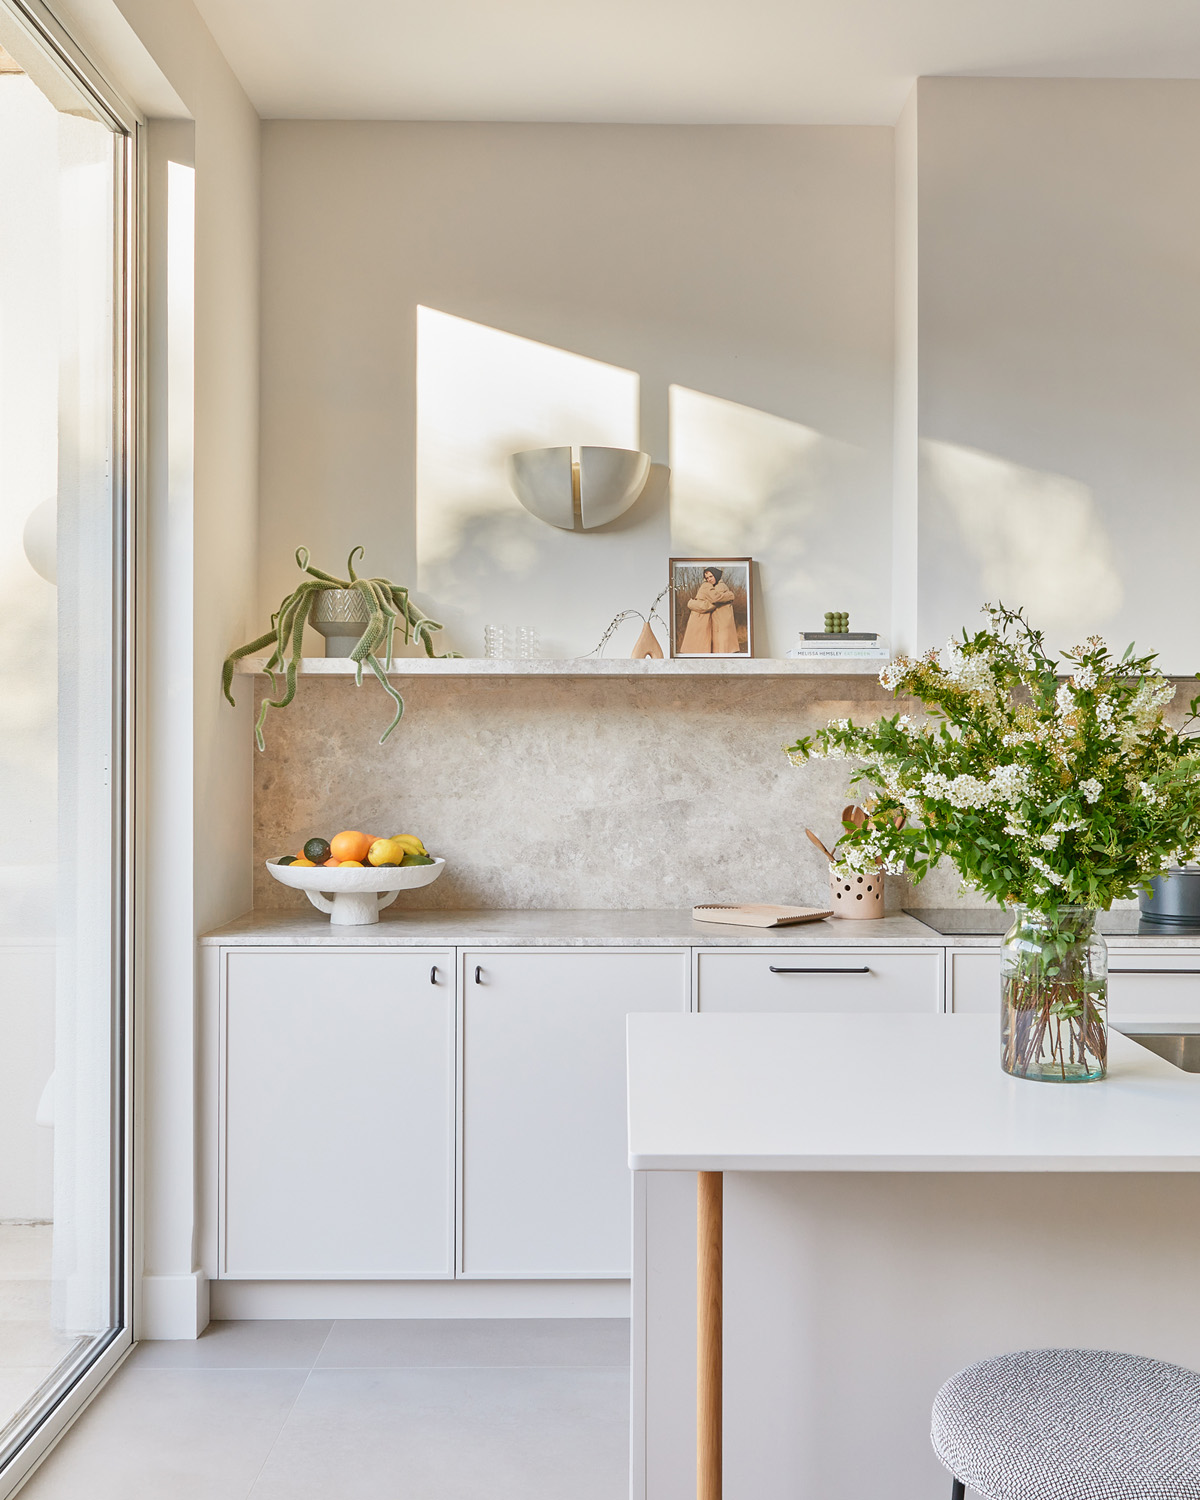 Kitchen by nune - minimalist interior design studio in London